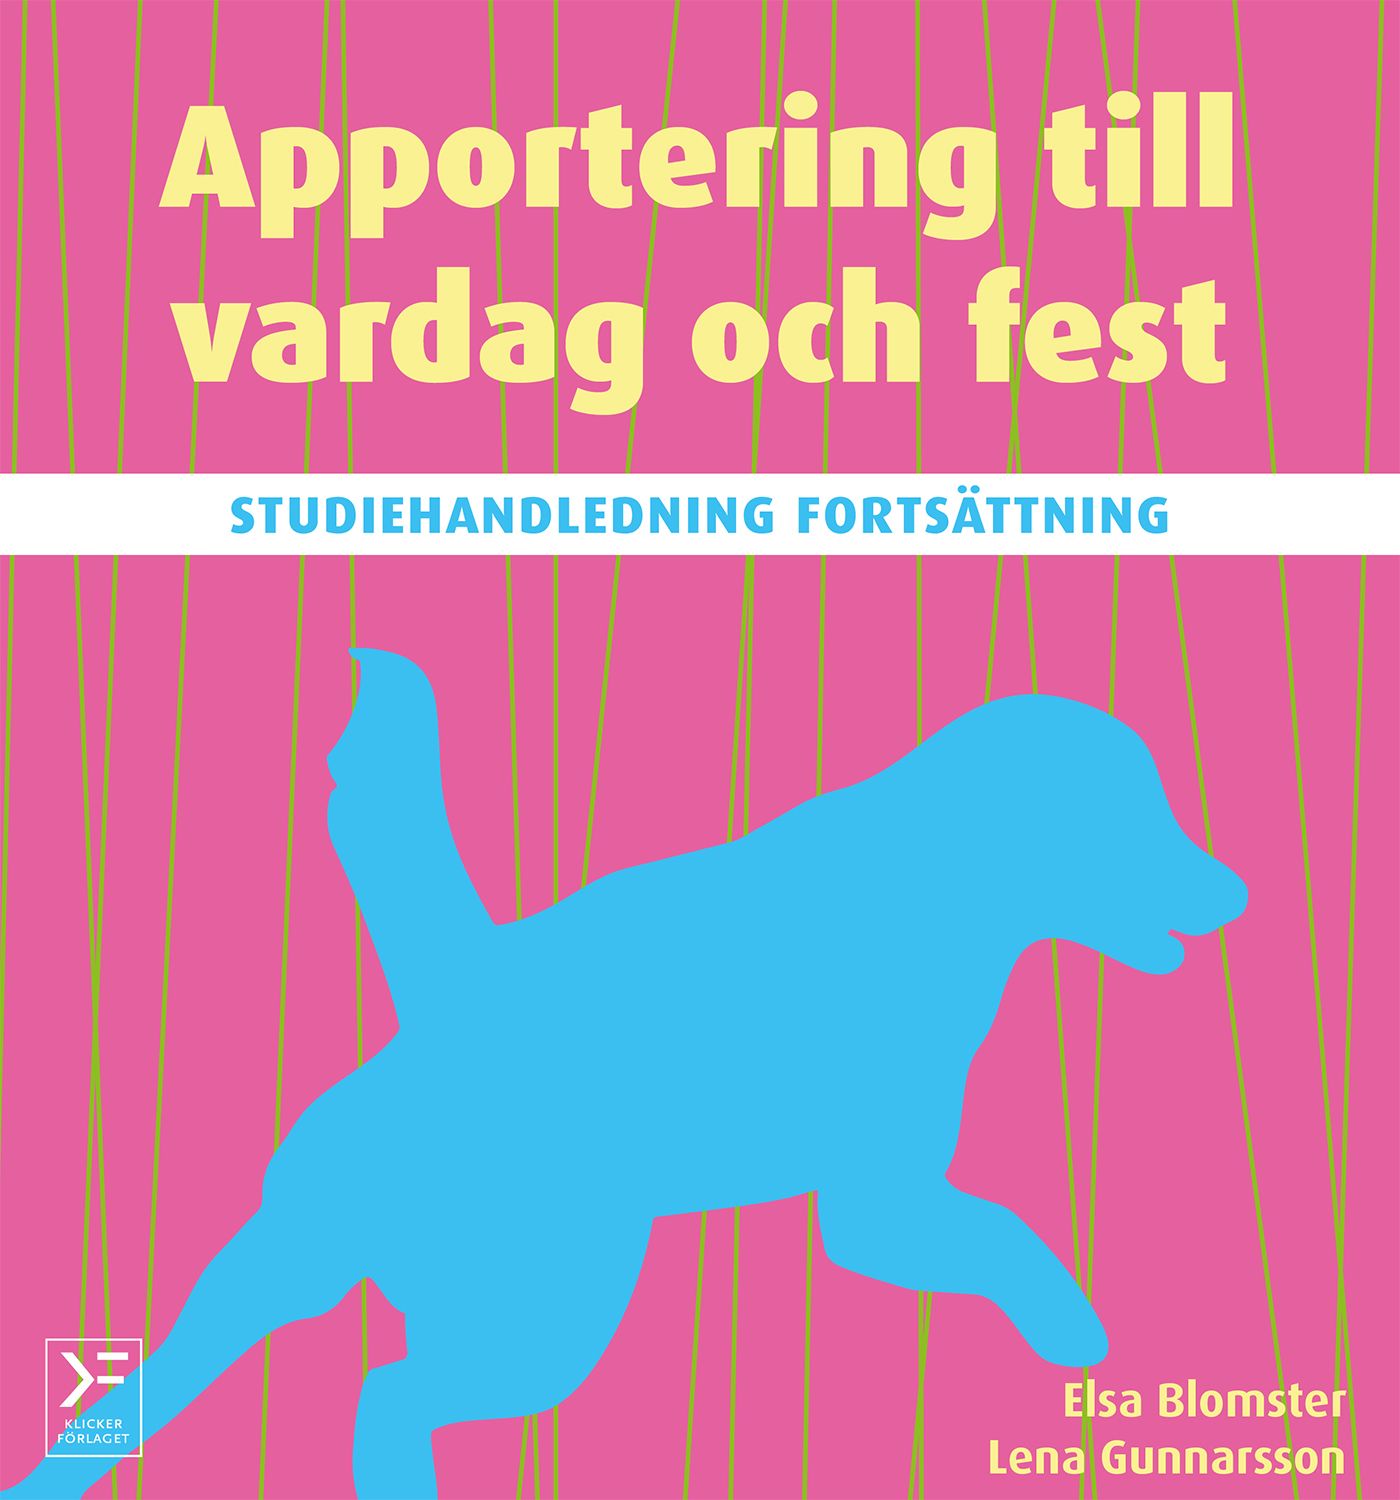 Apportering till vardag och fest : studiehandledning fortsättning, e-bog af Elsa Blomster, Lena Gunnarsson